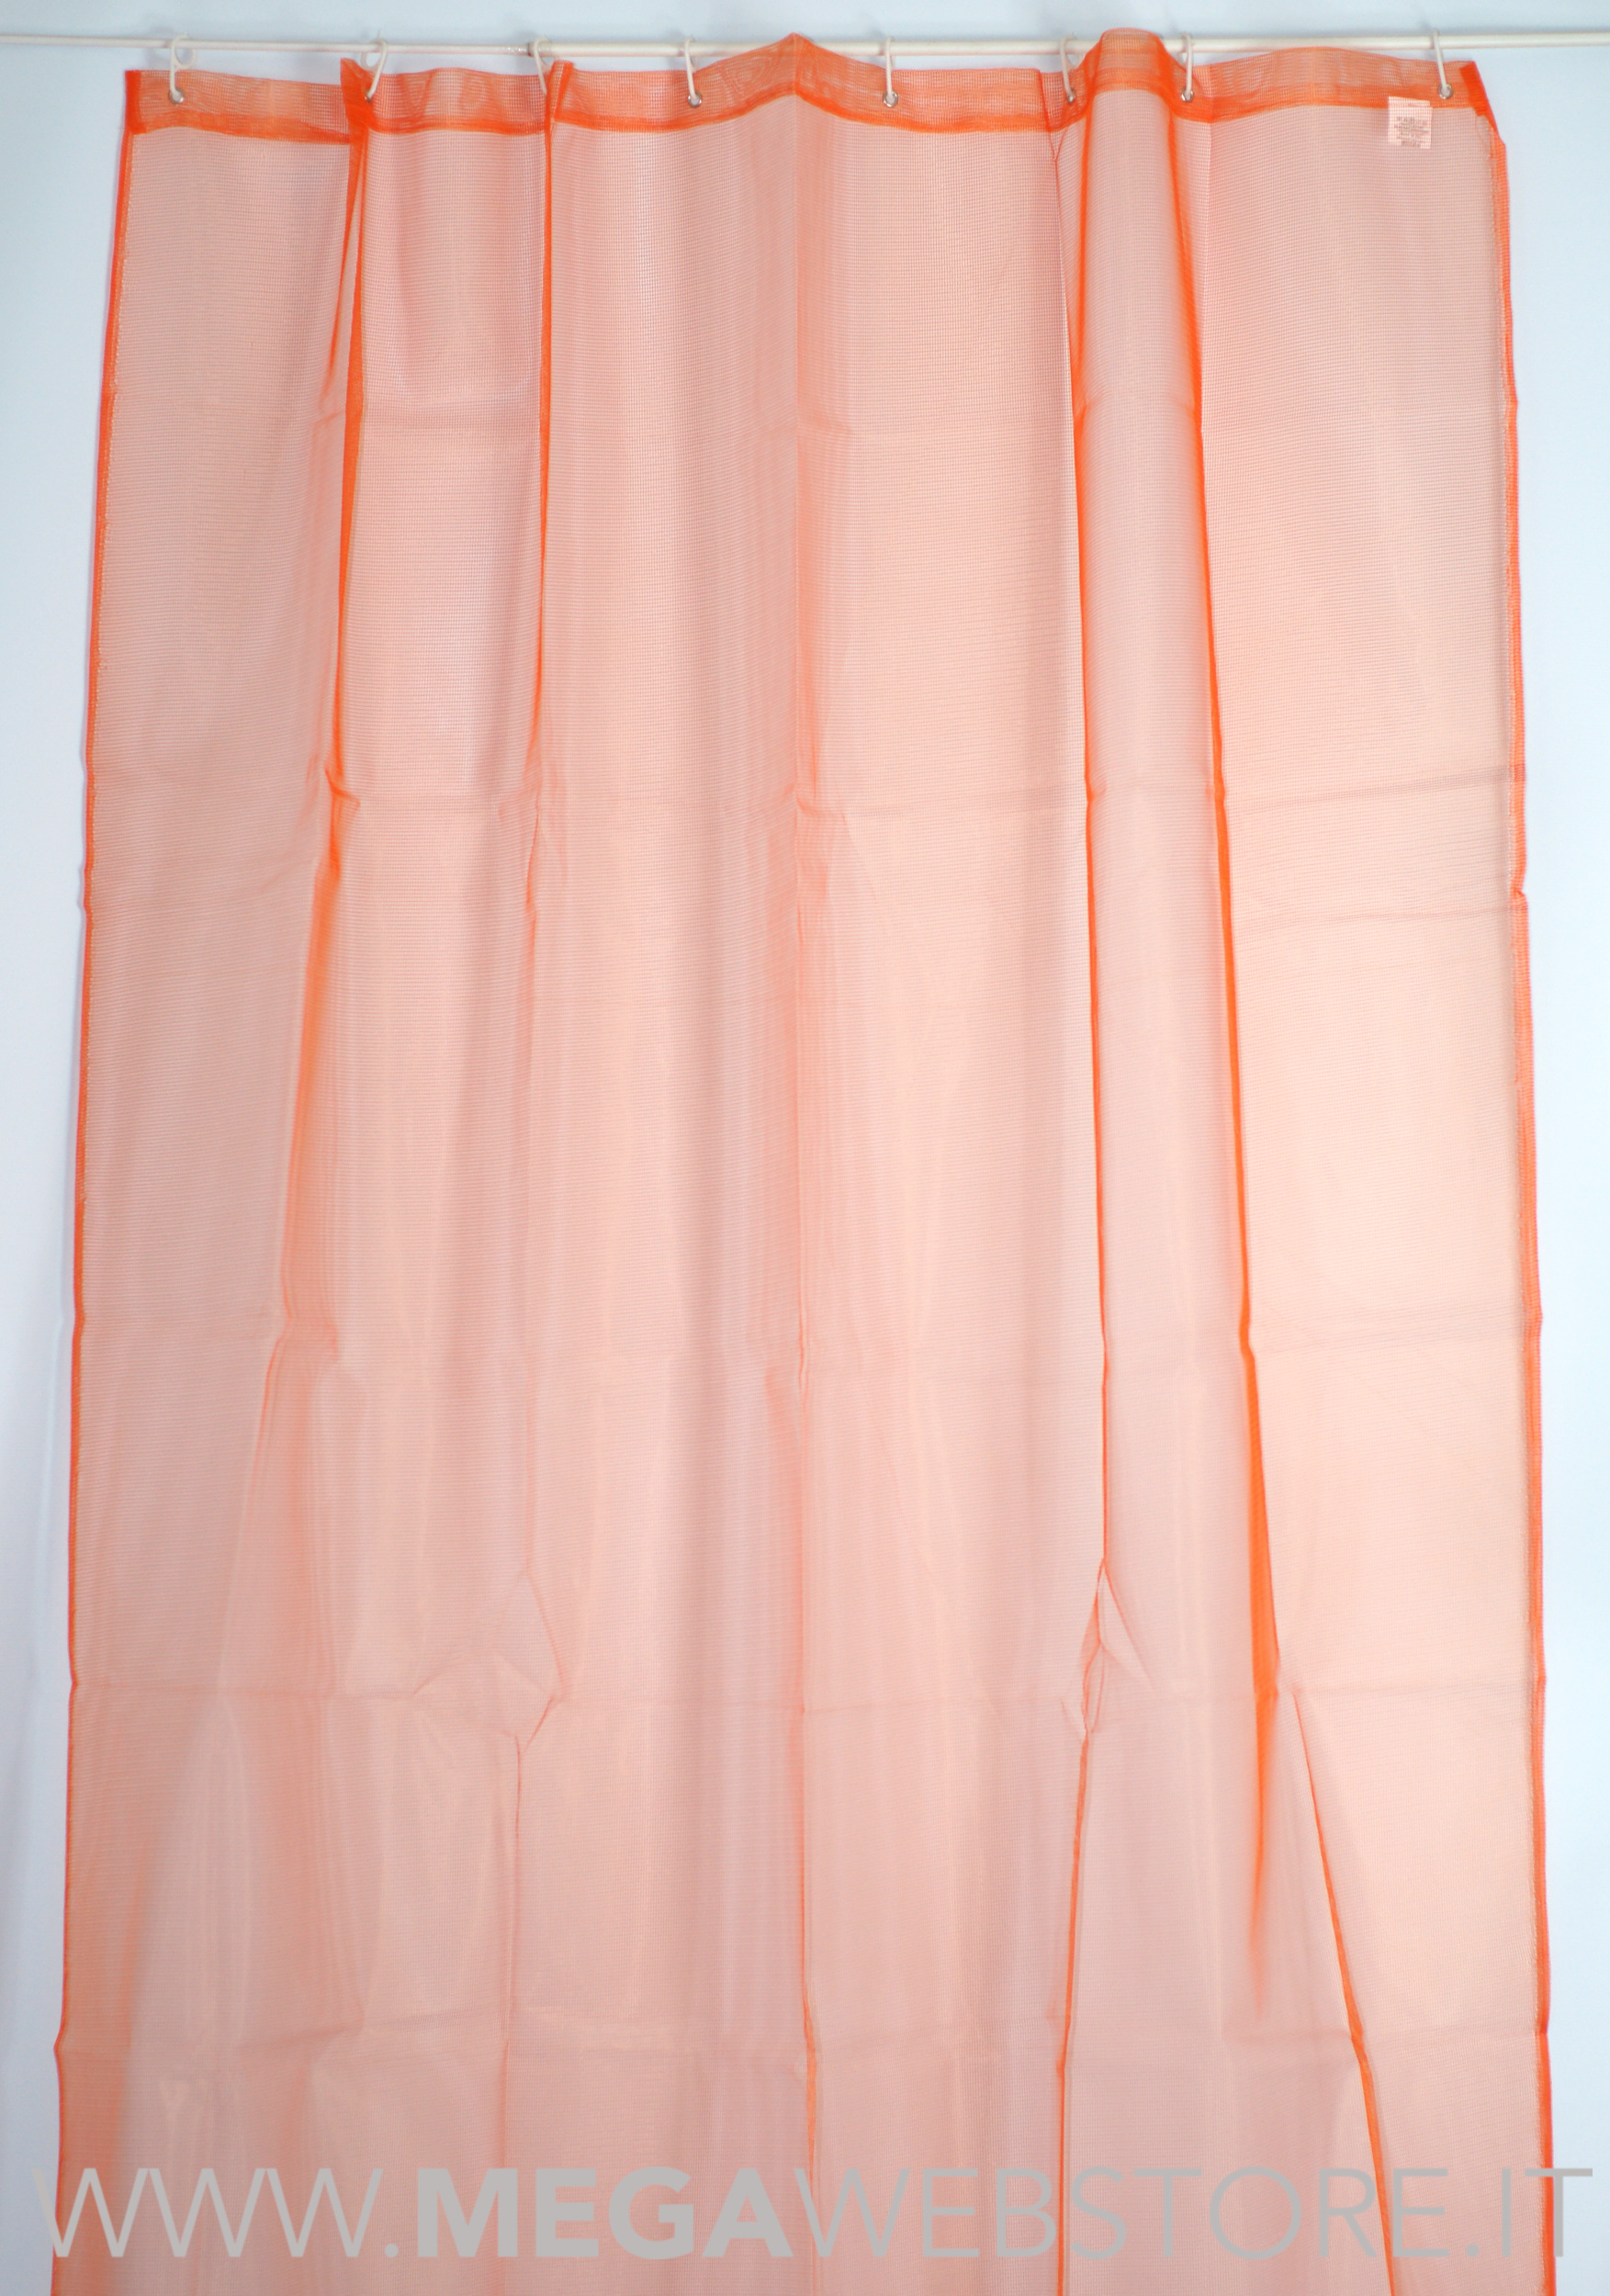 Zanzariera tenda per finestra con anelli tinta unita arancio – MEGAWEBSTORE